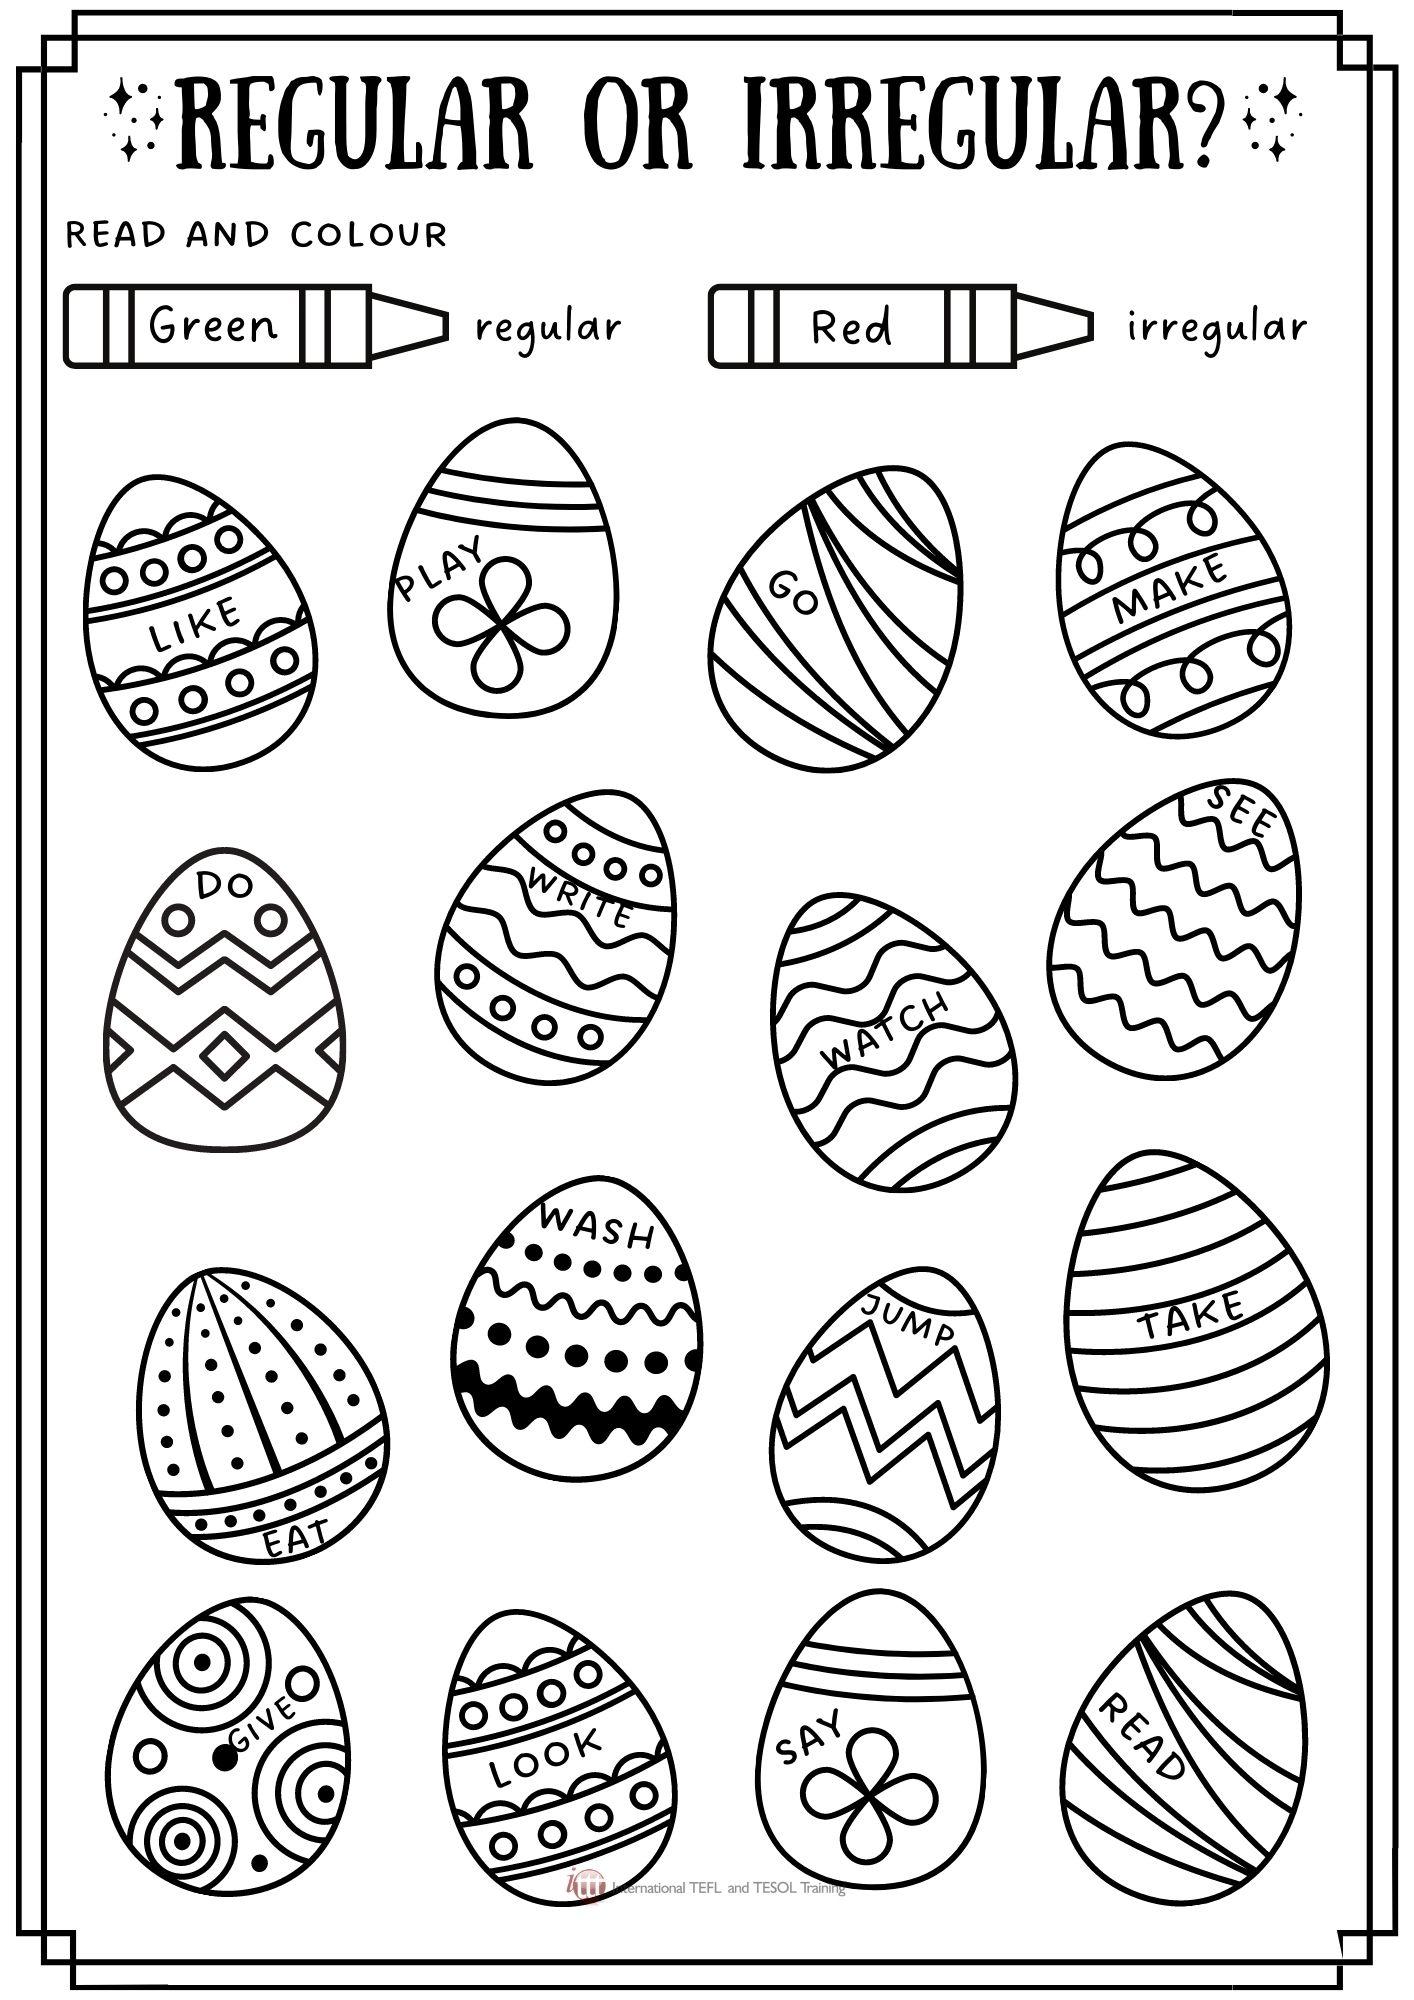 Grammar corner Regular or Irregular Verb Easter Eggs